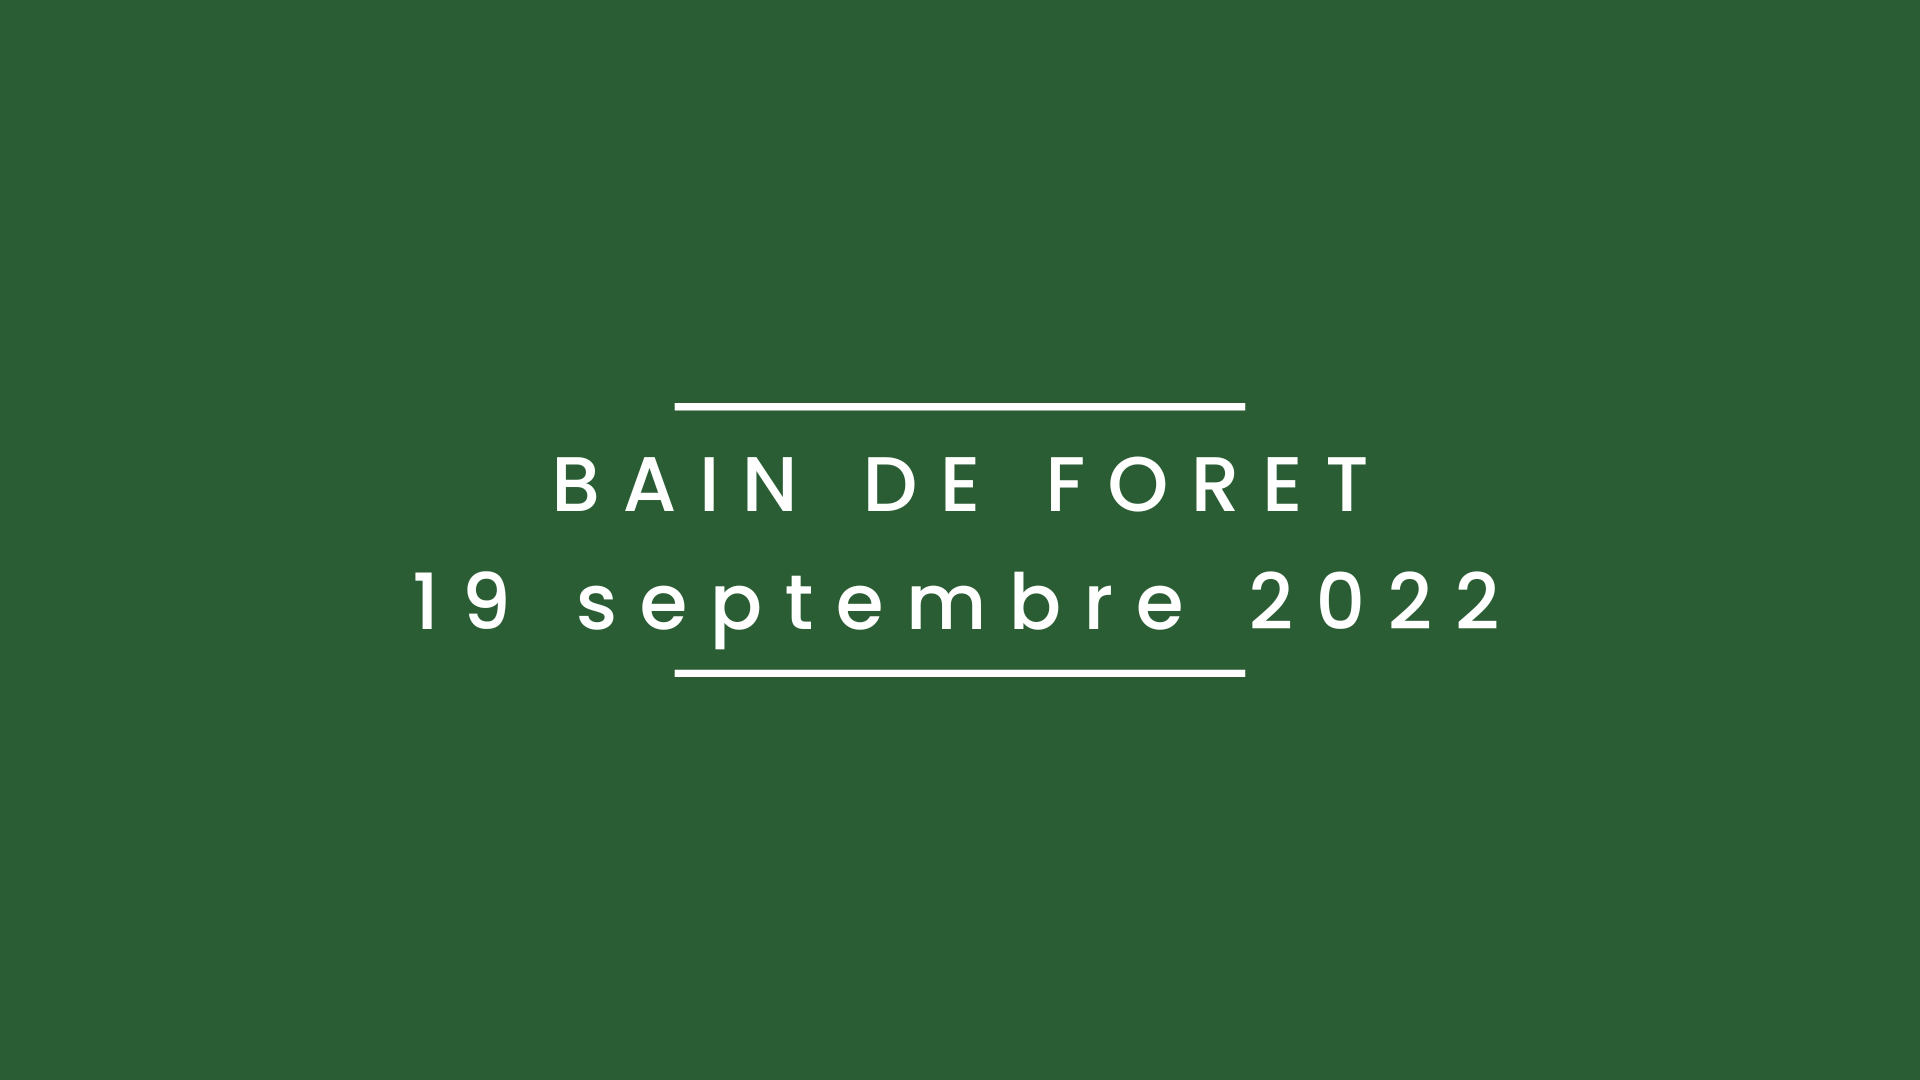 Bain de forêt 19 septembre 2022